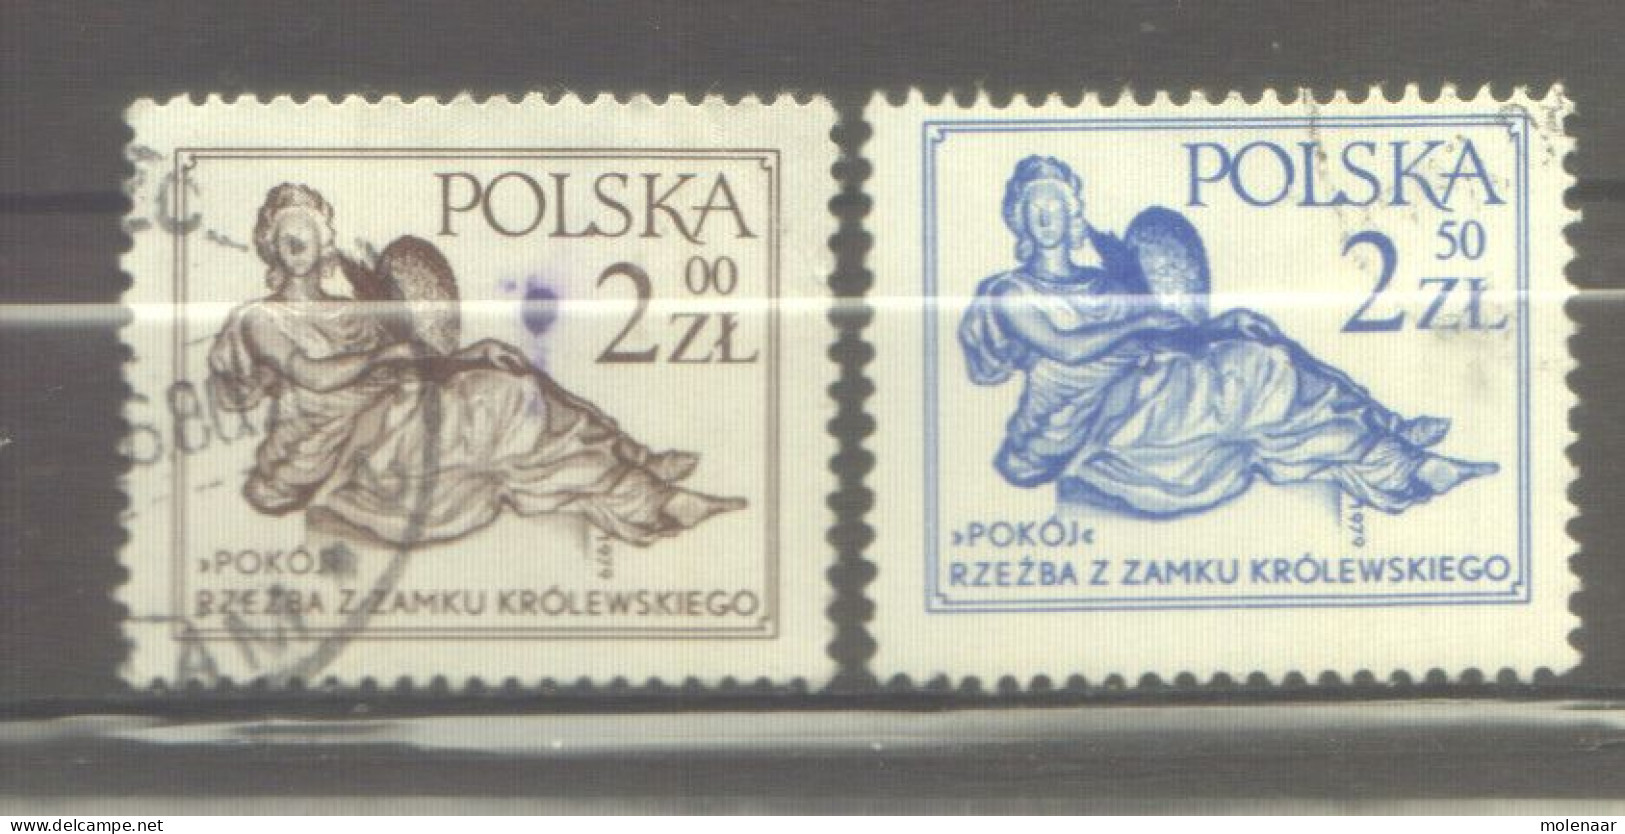 Postzegels > Europa > Polen > 1944-.... Republiek > 1971-80 > Gebruikt  2652-2653 (12176) - Used Stamps